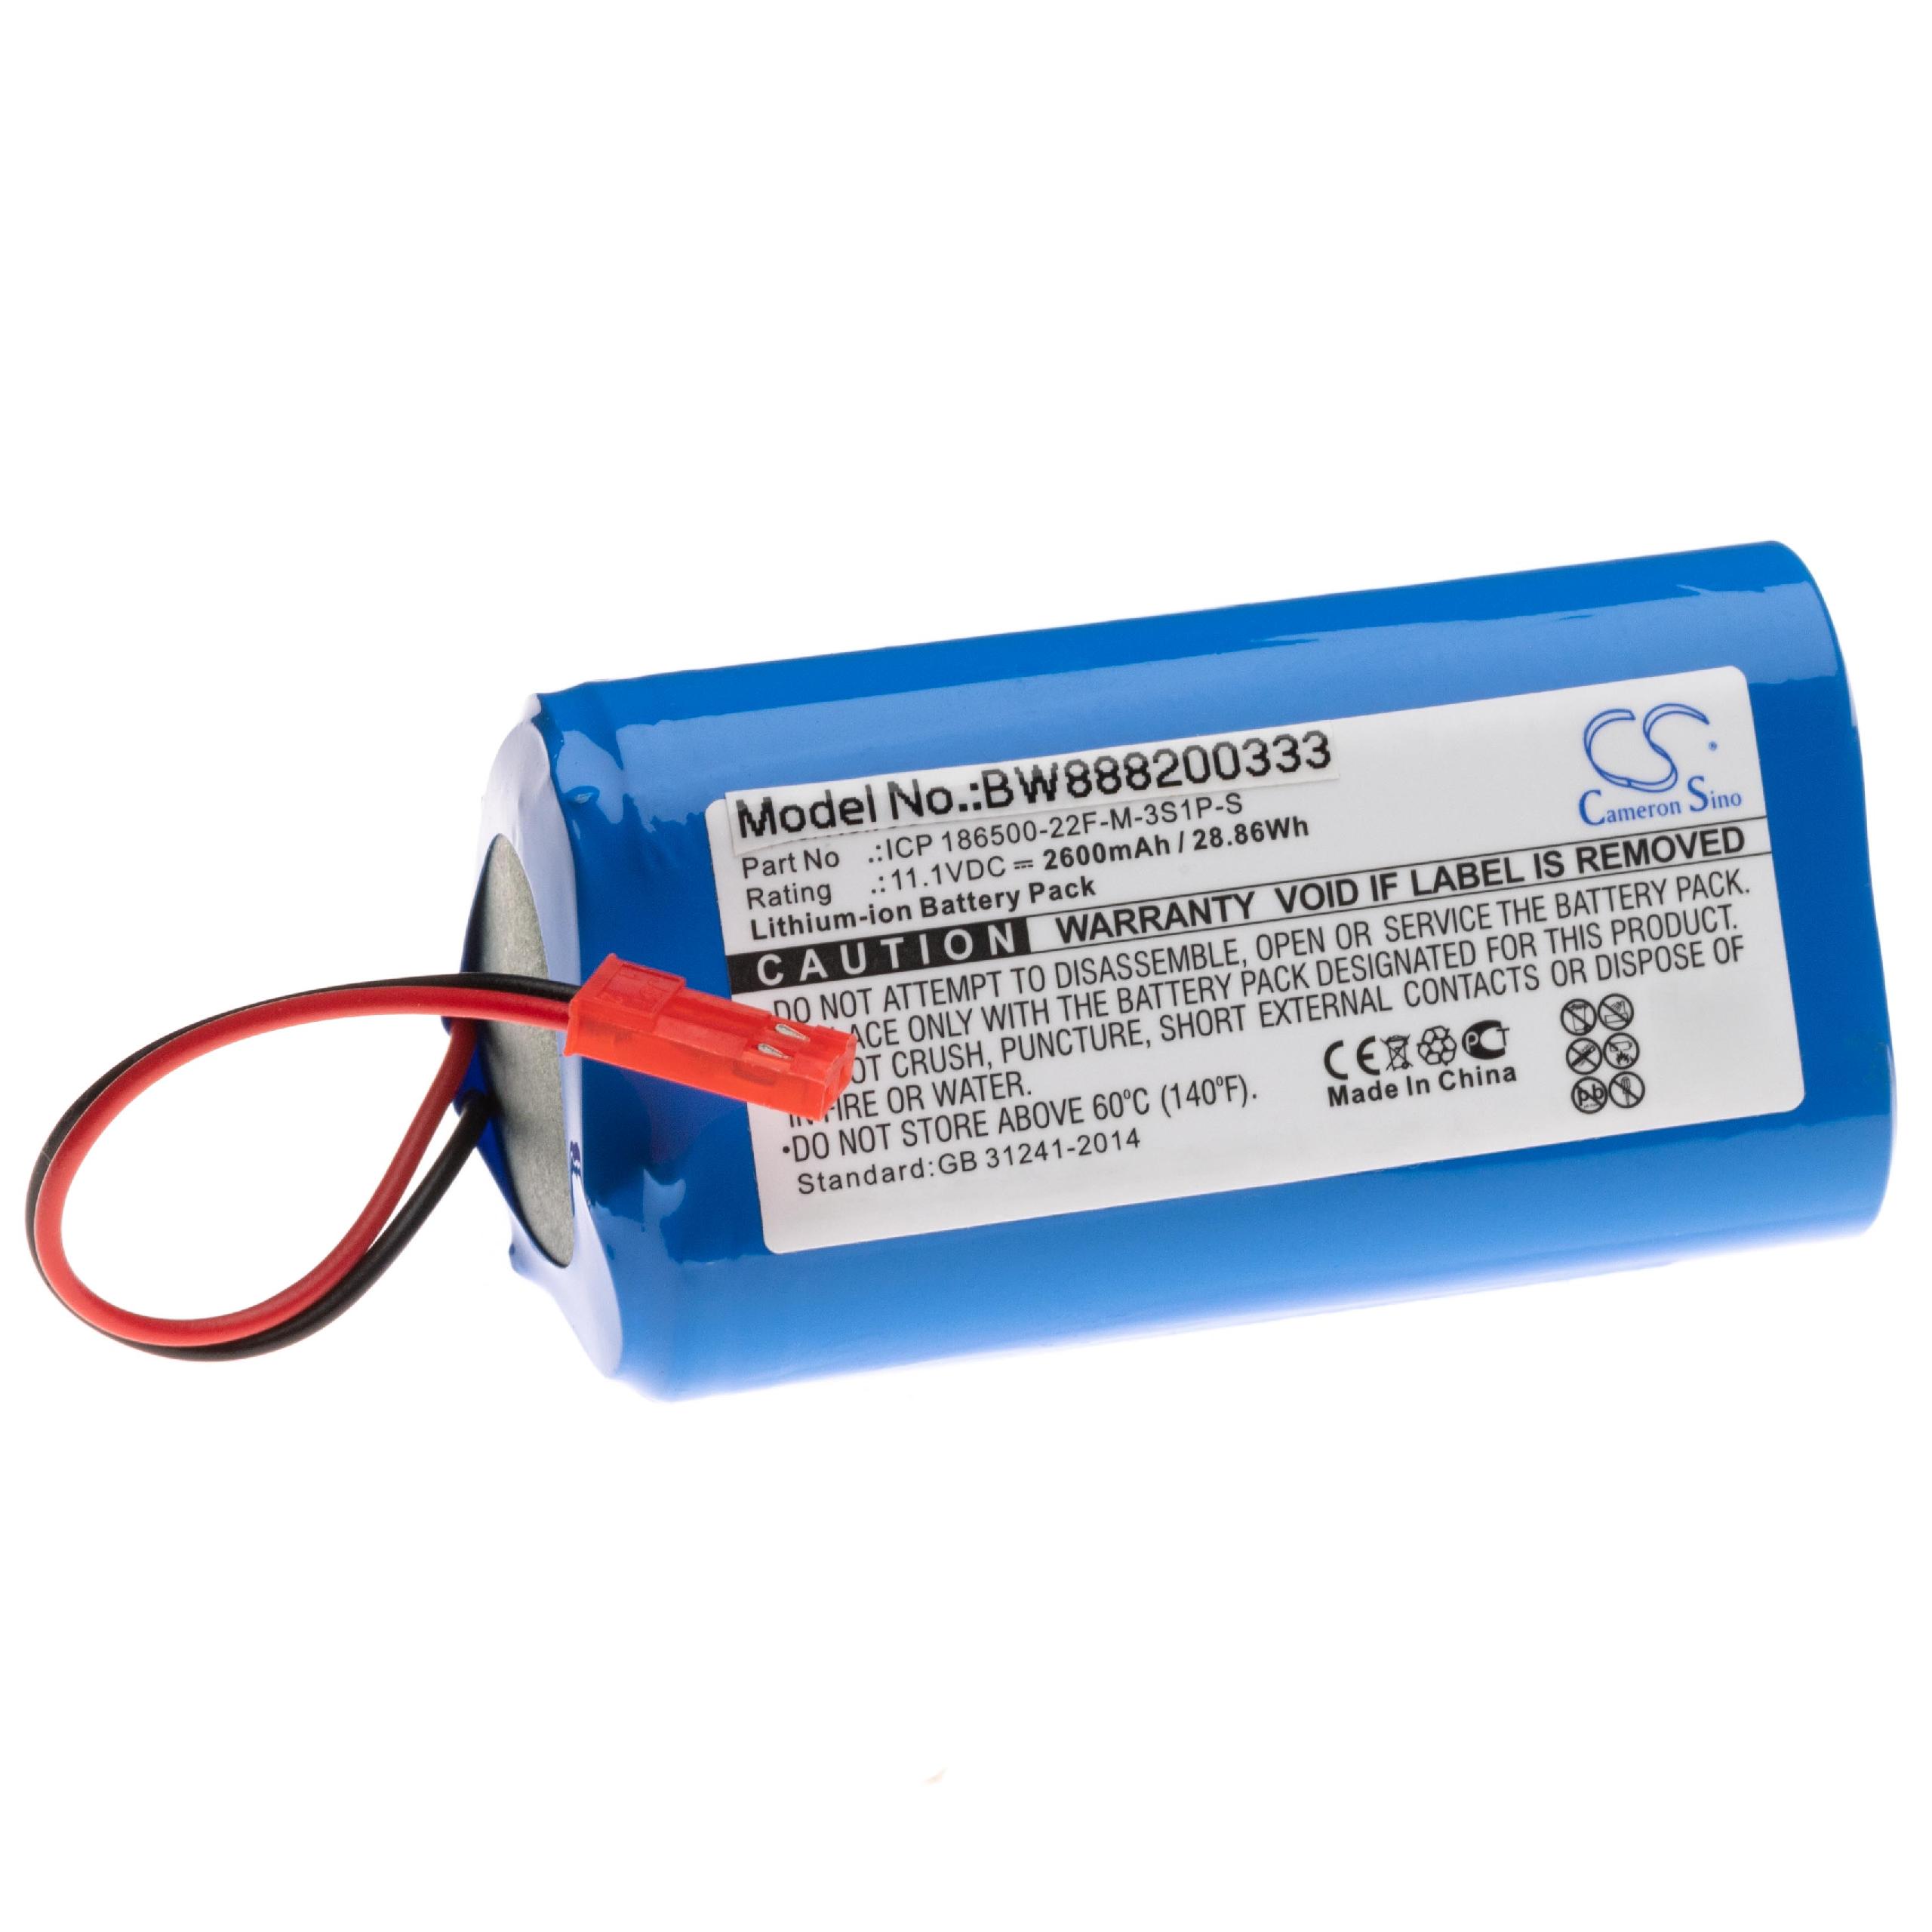 Batterie remplace Electropan ICP 186500-22F-M-3S1P-S pour robot aspirateur - 2600mAh 11,1V Li-ion